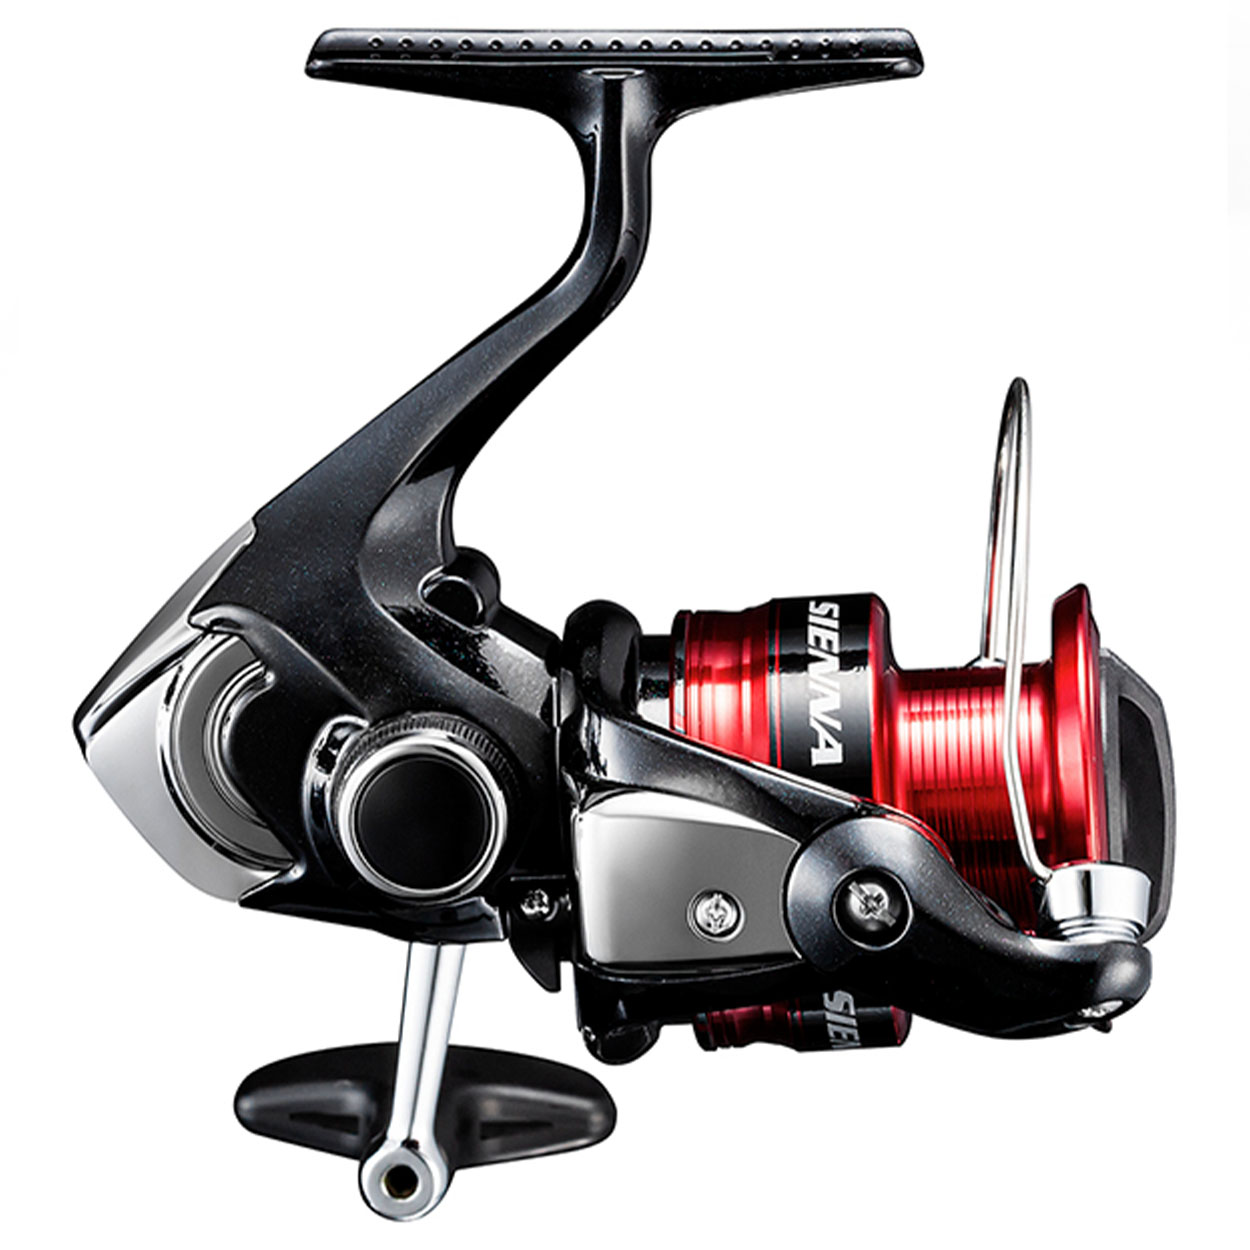 Carrete de spinning Shimano Sienna FG 2500 HG - Angler  Tienda de  artículos de camping, pesca deportiva y outdoors